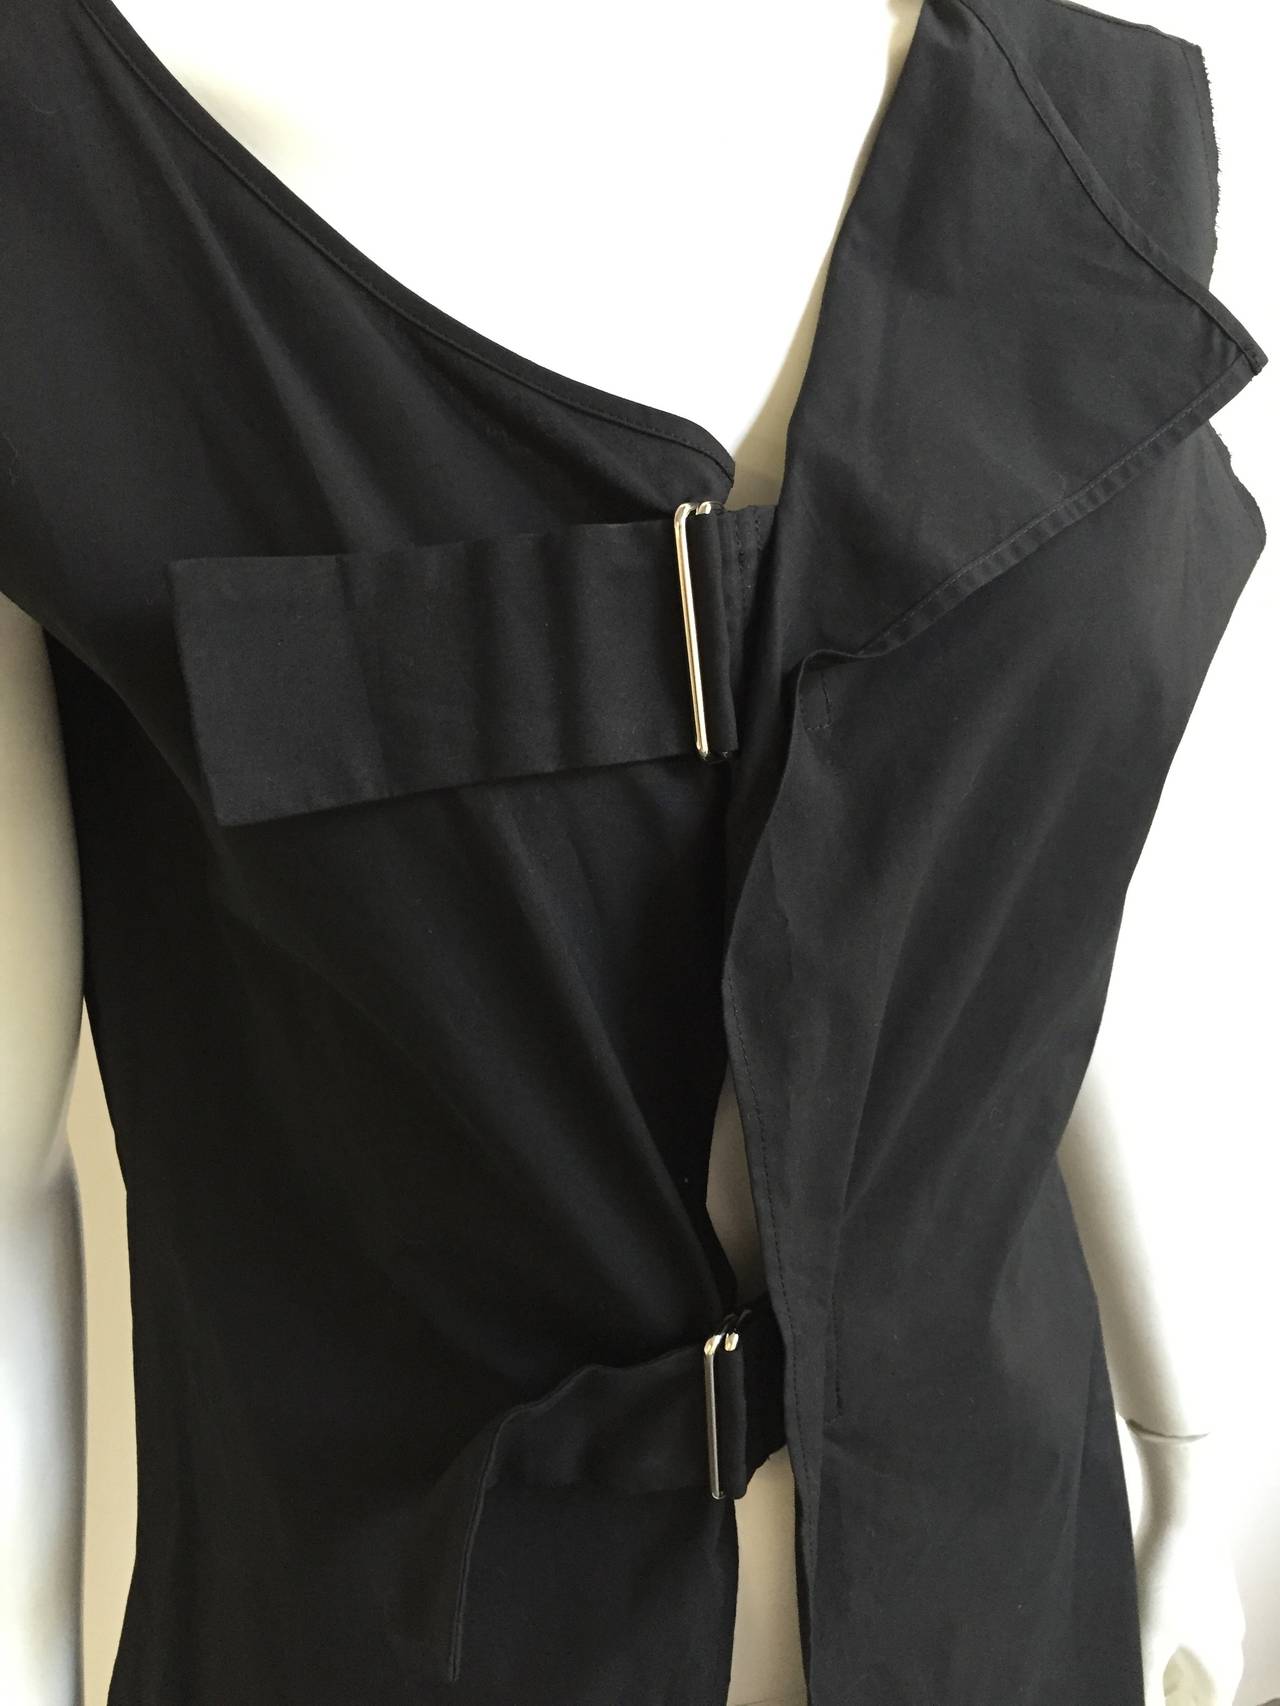 Women's Yohji Yamamoto cotton tunic size 2 / 4.